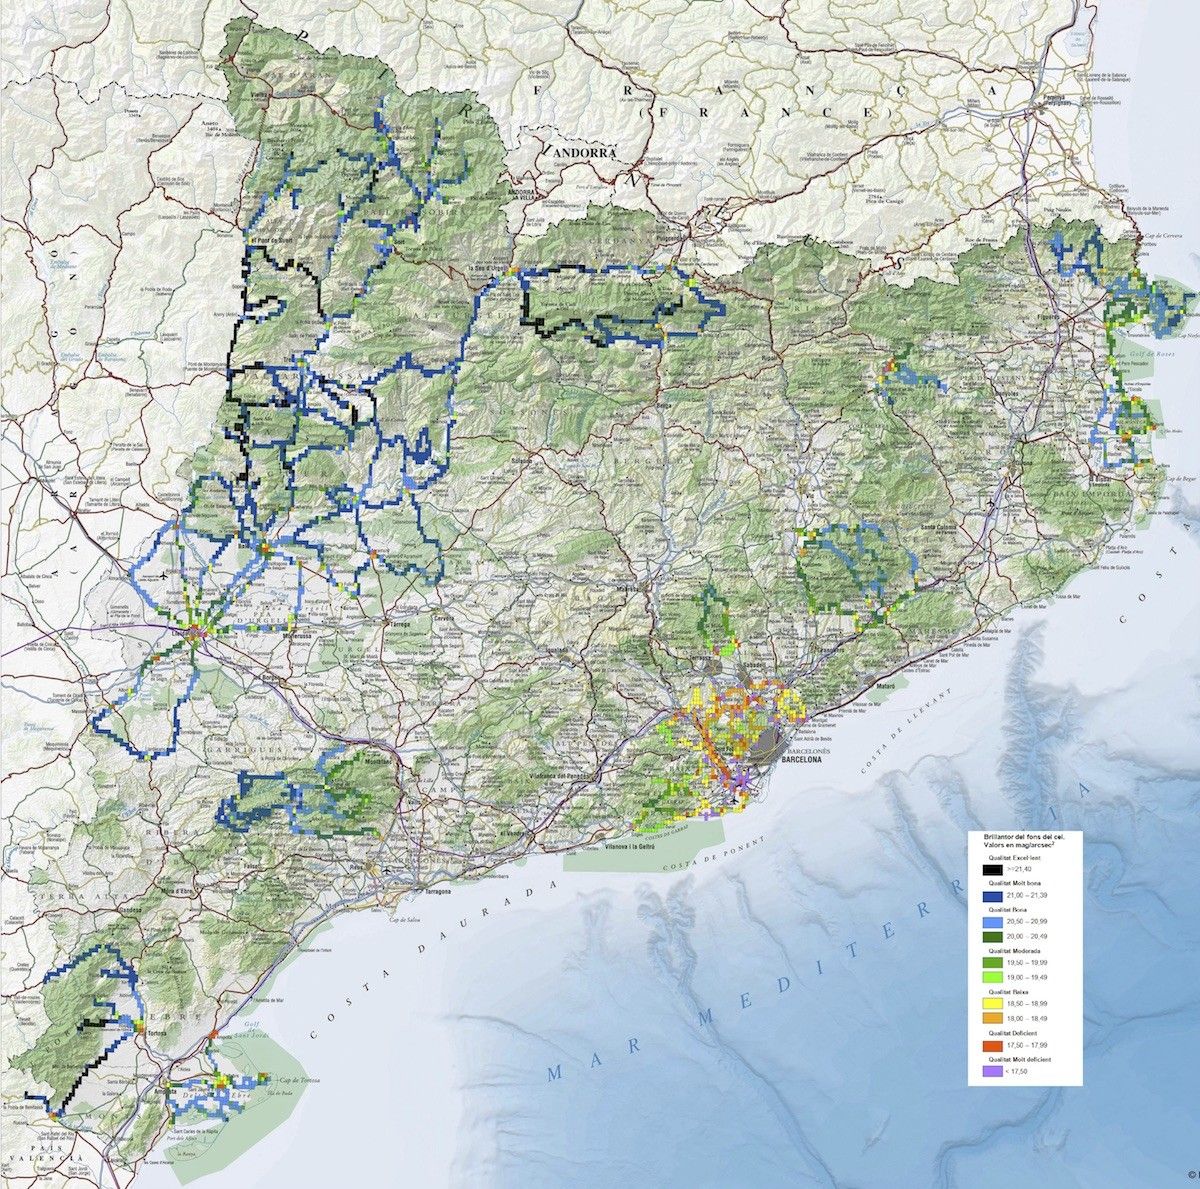 Mapa de la qualitat del cel de Catalunya. Els senyals negres i blau fosc són els de més qualitat.